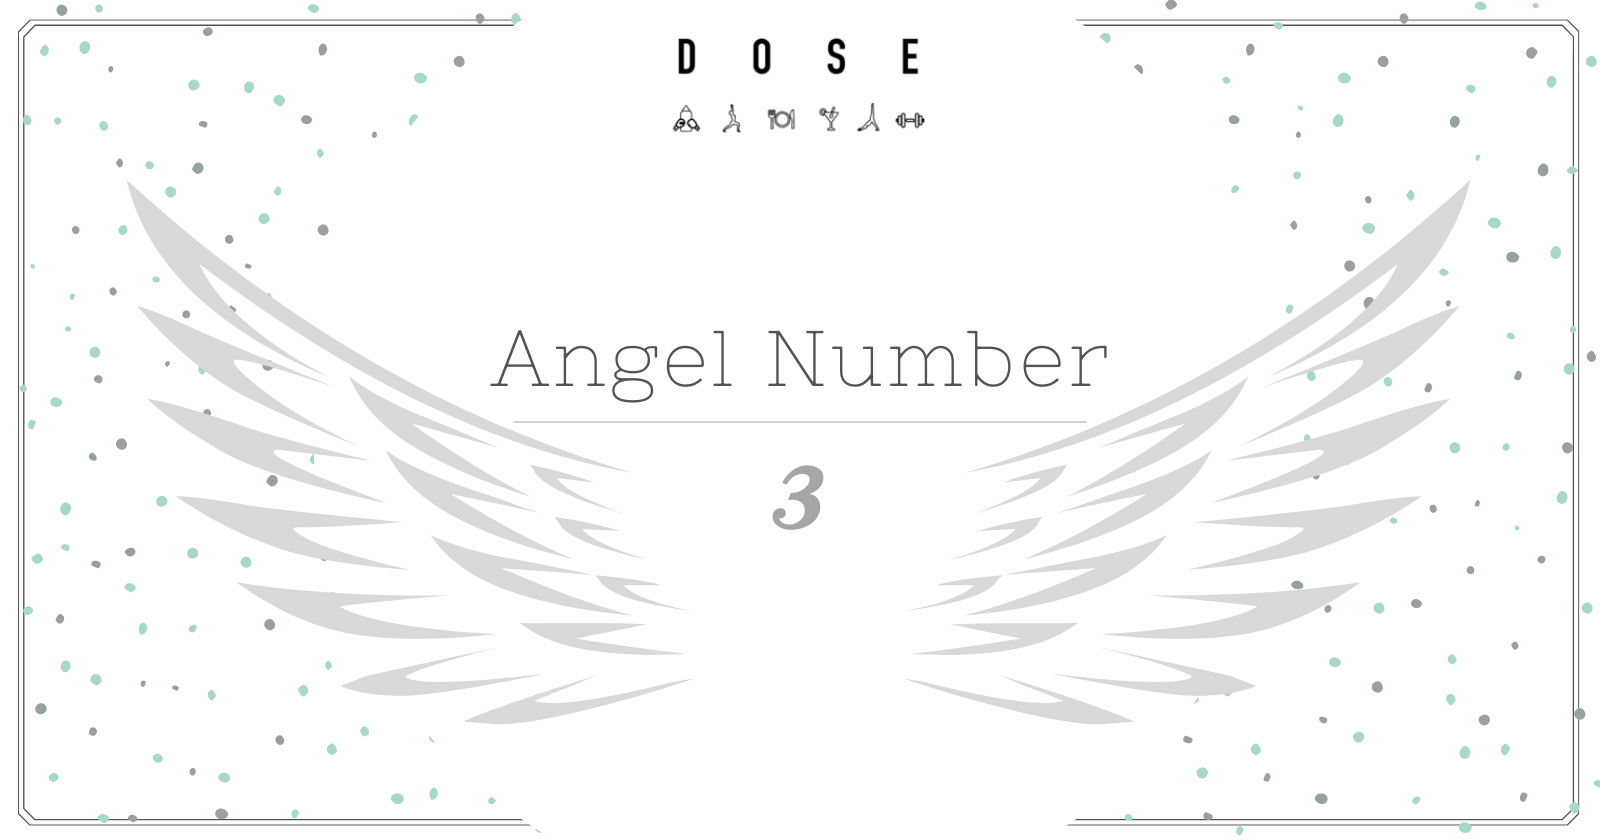 Angel Number 3